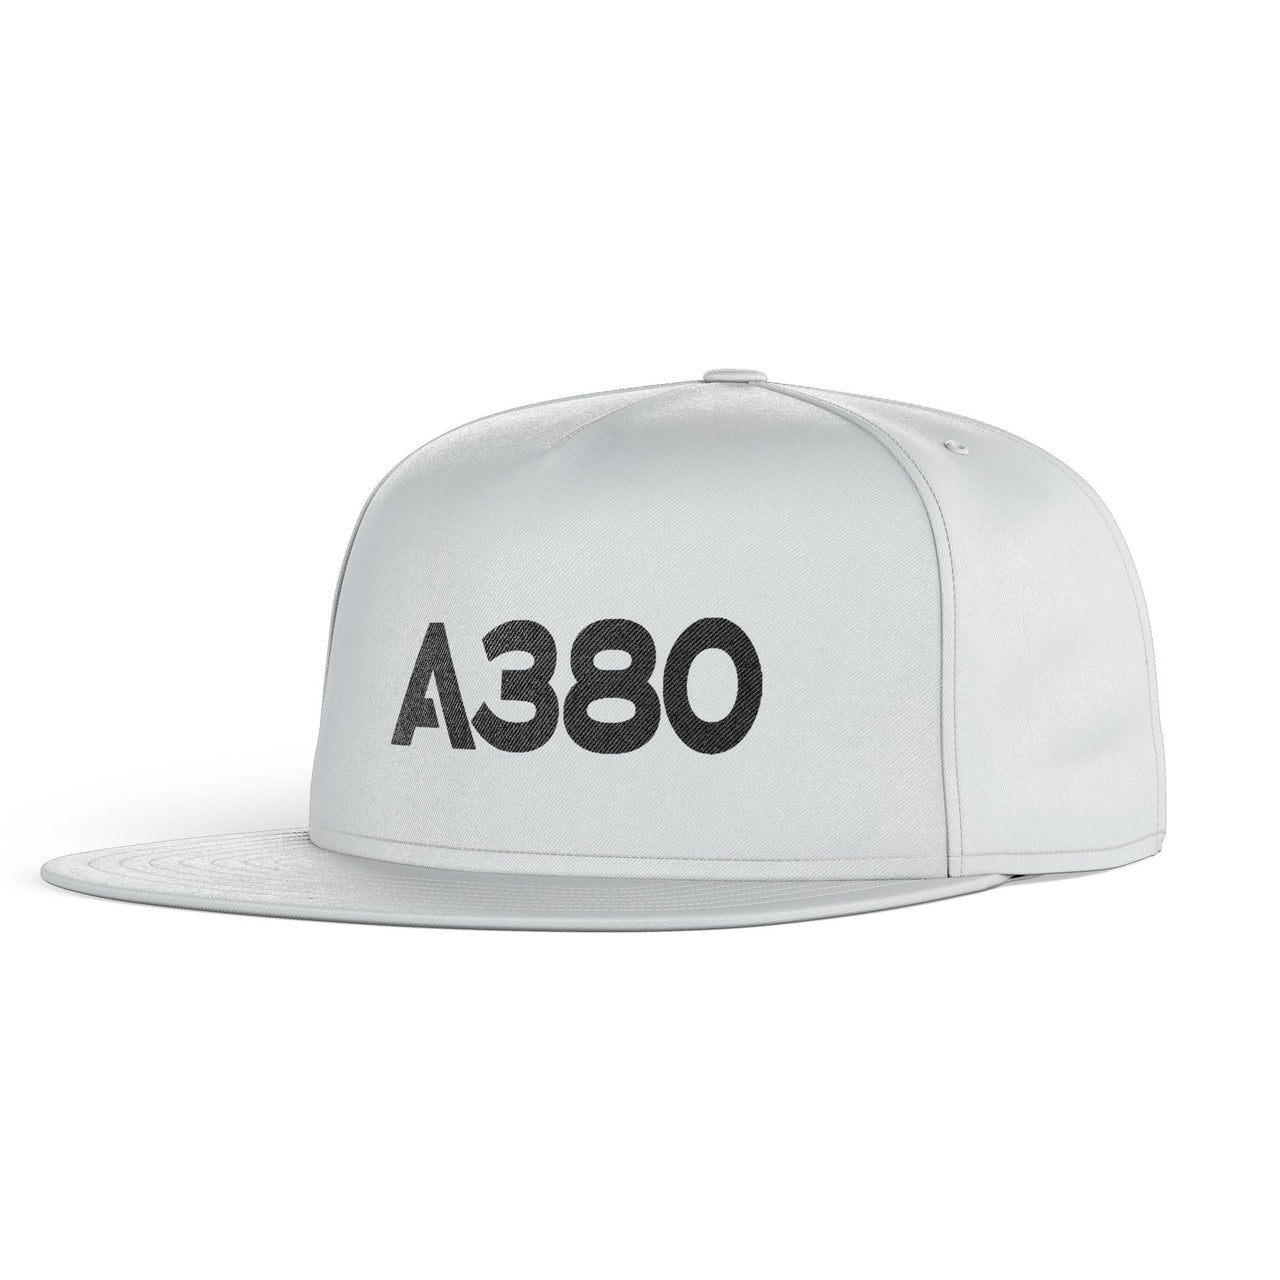 A380 Flat Text Designed Snapback Caps & Hats